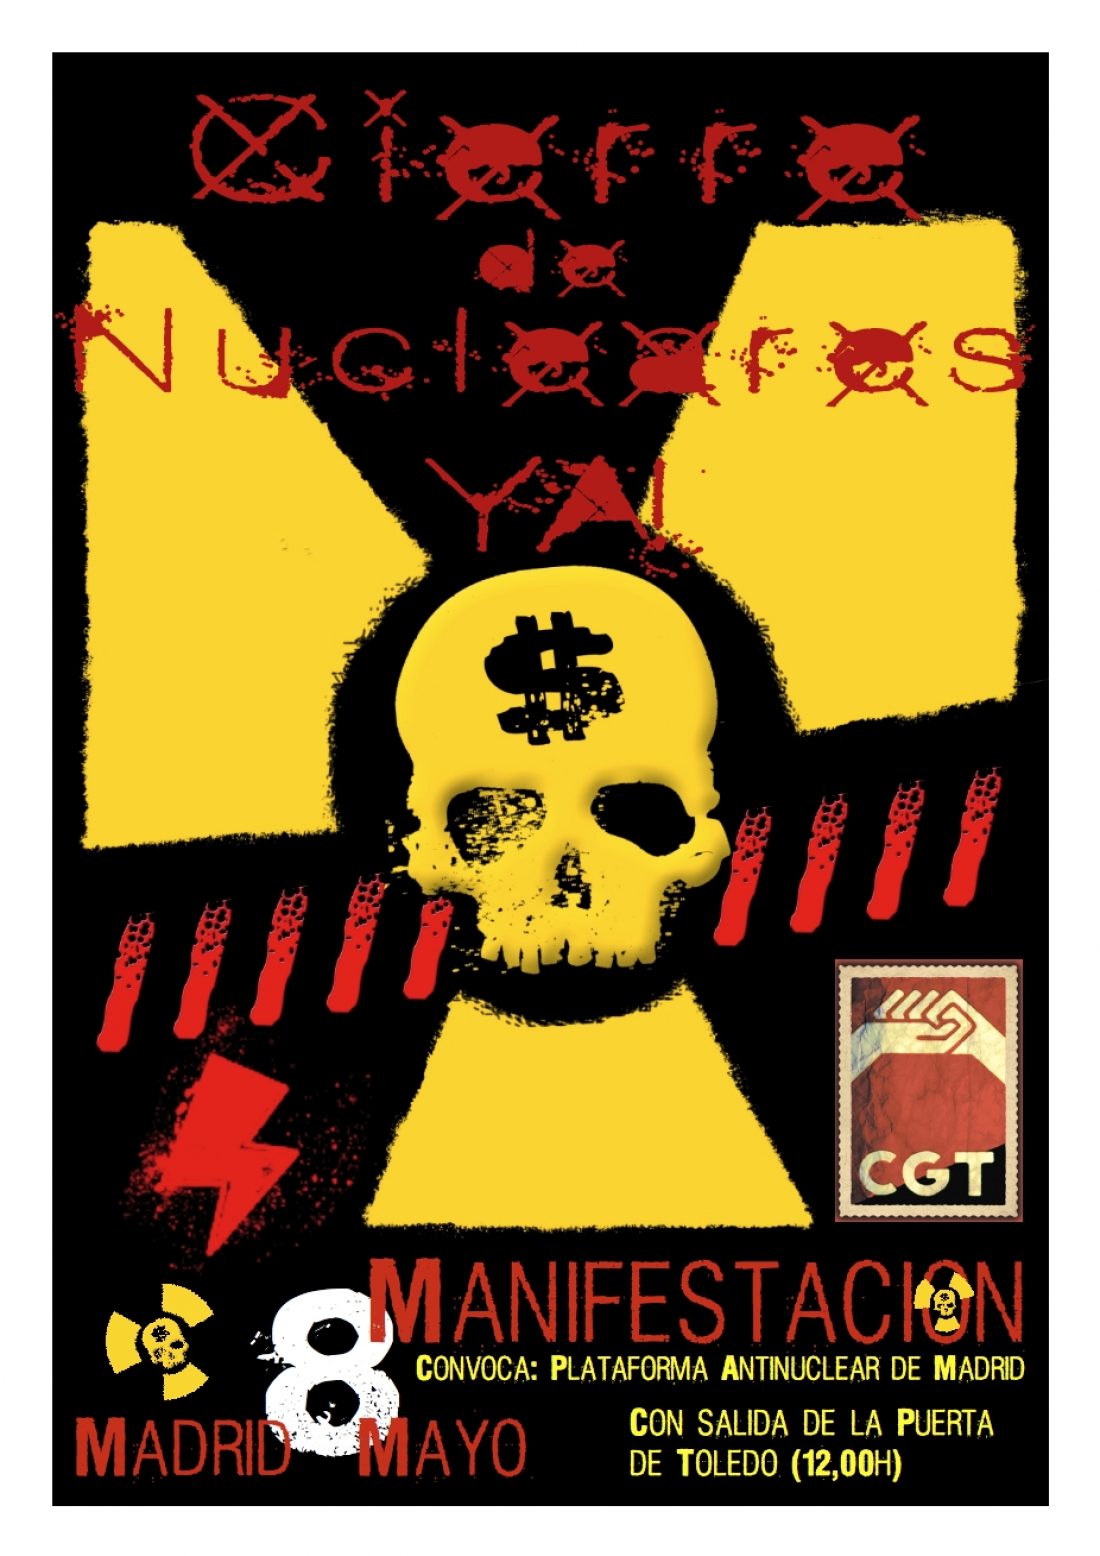 Madrid, 8 de Mayo : Manifestación «Nucleares, cierre YA !»